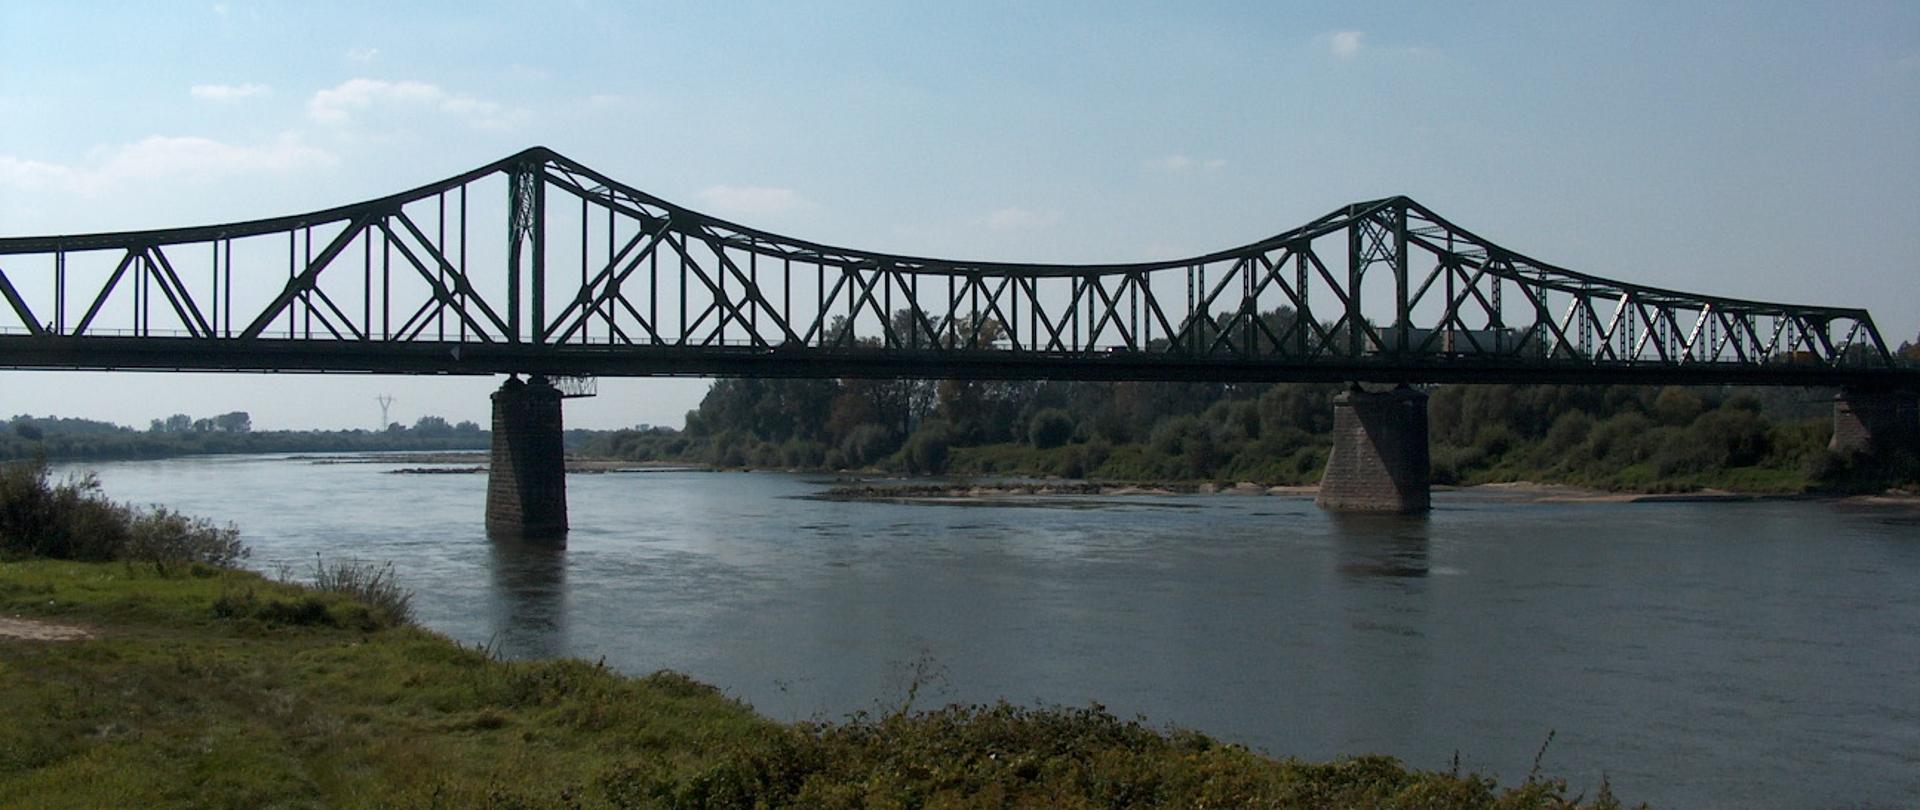 W środku rzeka Wisła, po obu stronach obrośnięte roślinami brzegi, most przez rzekę w Szczucinie o konstrukcji stalowej na kamiennych podporach 